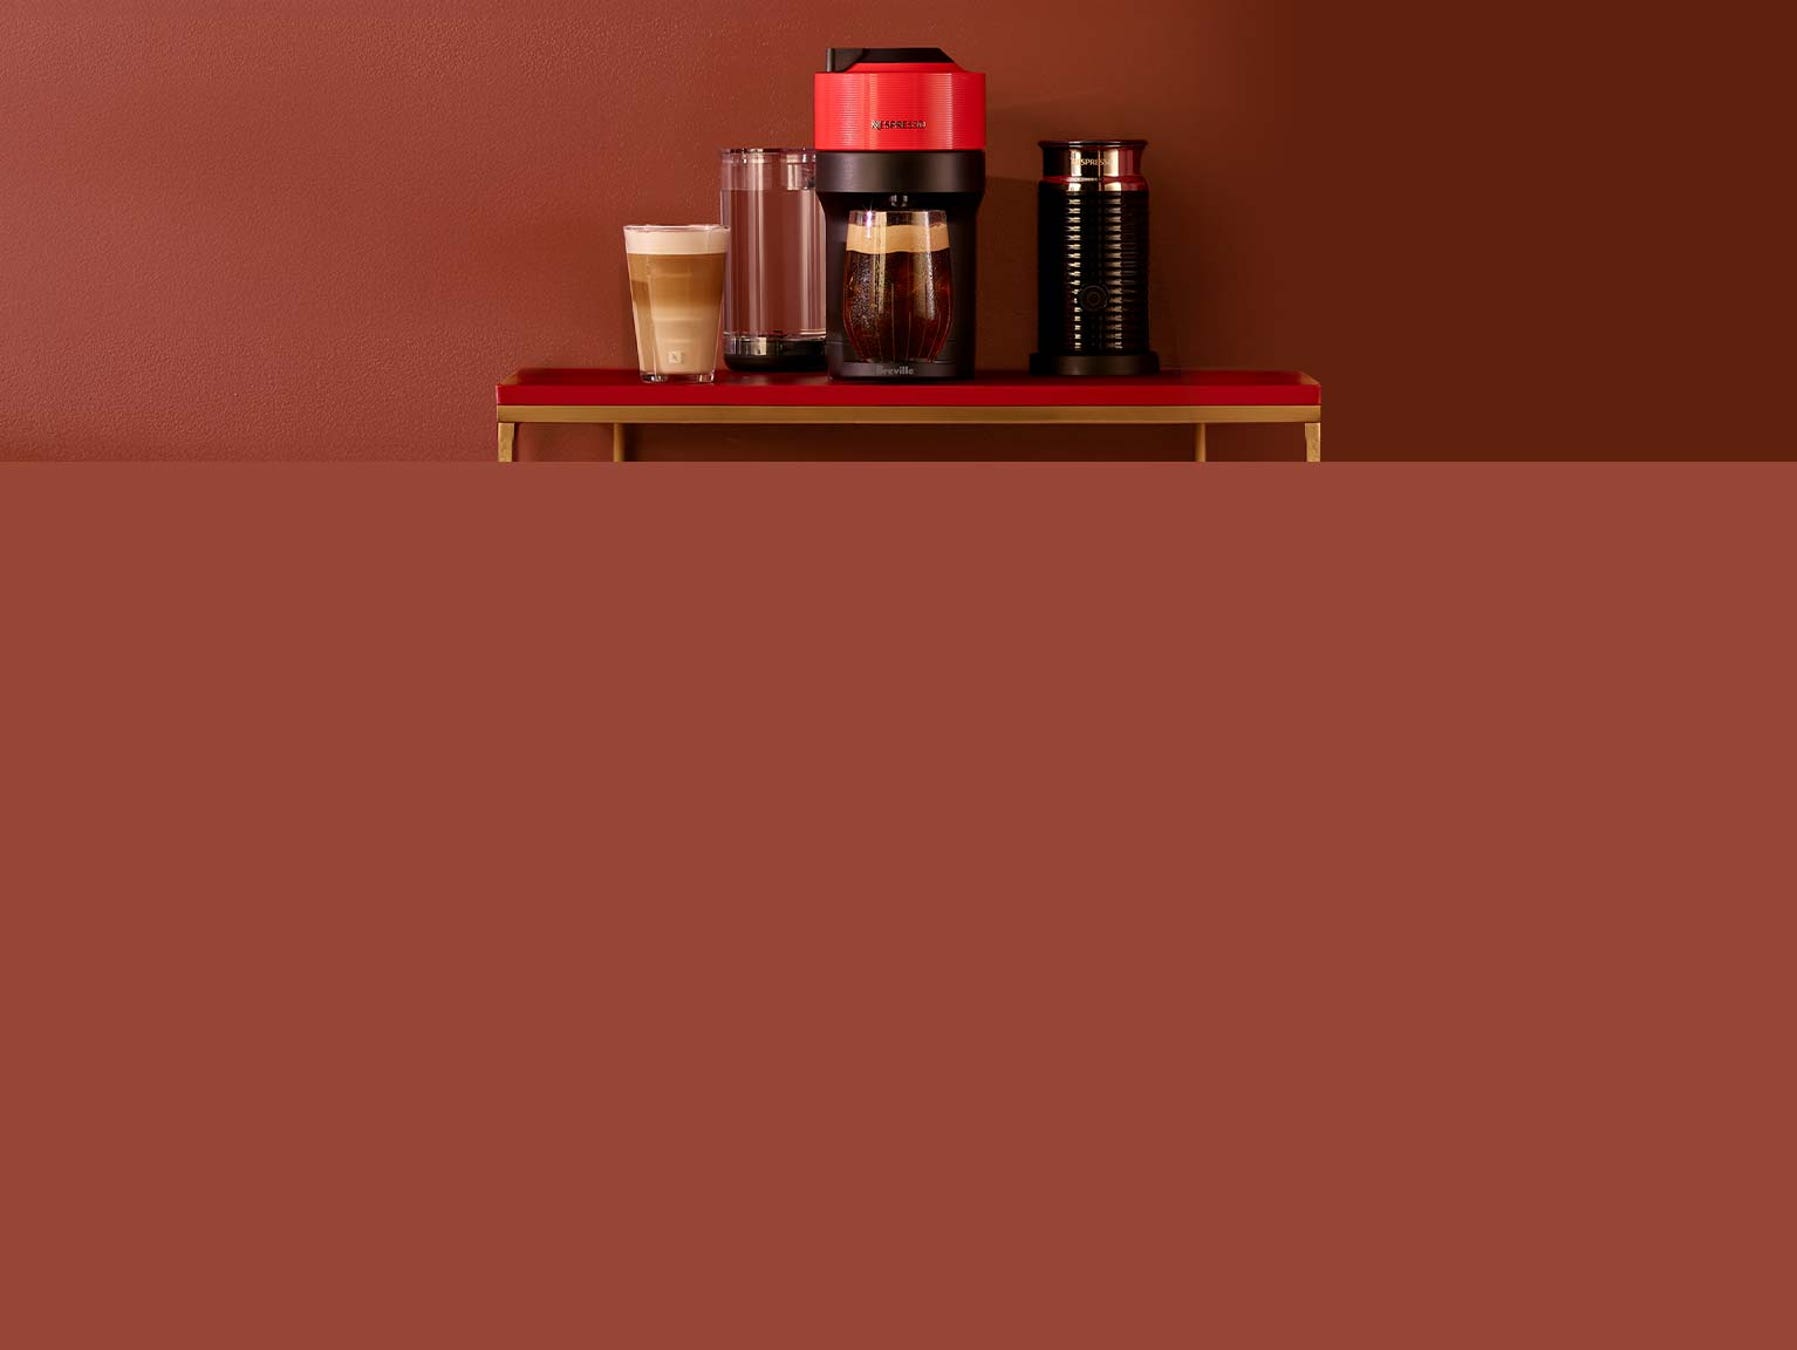 Machine à café Nespresso Pixie avec mousseur à lait, argent, Delonghi —  Boutique de la balayeuse